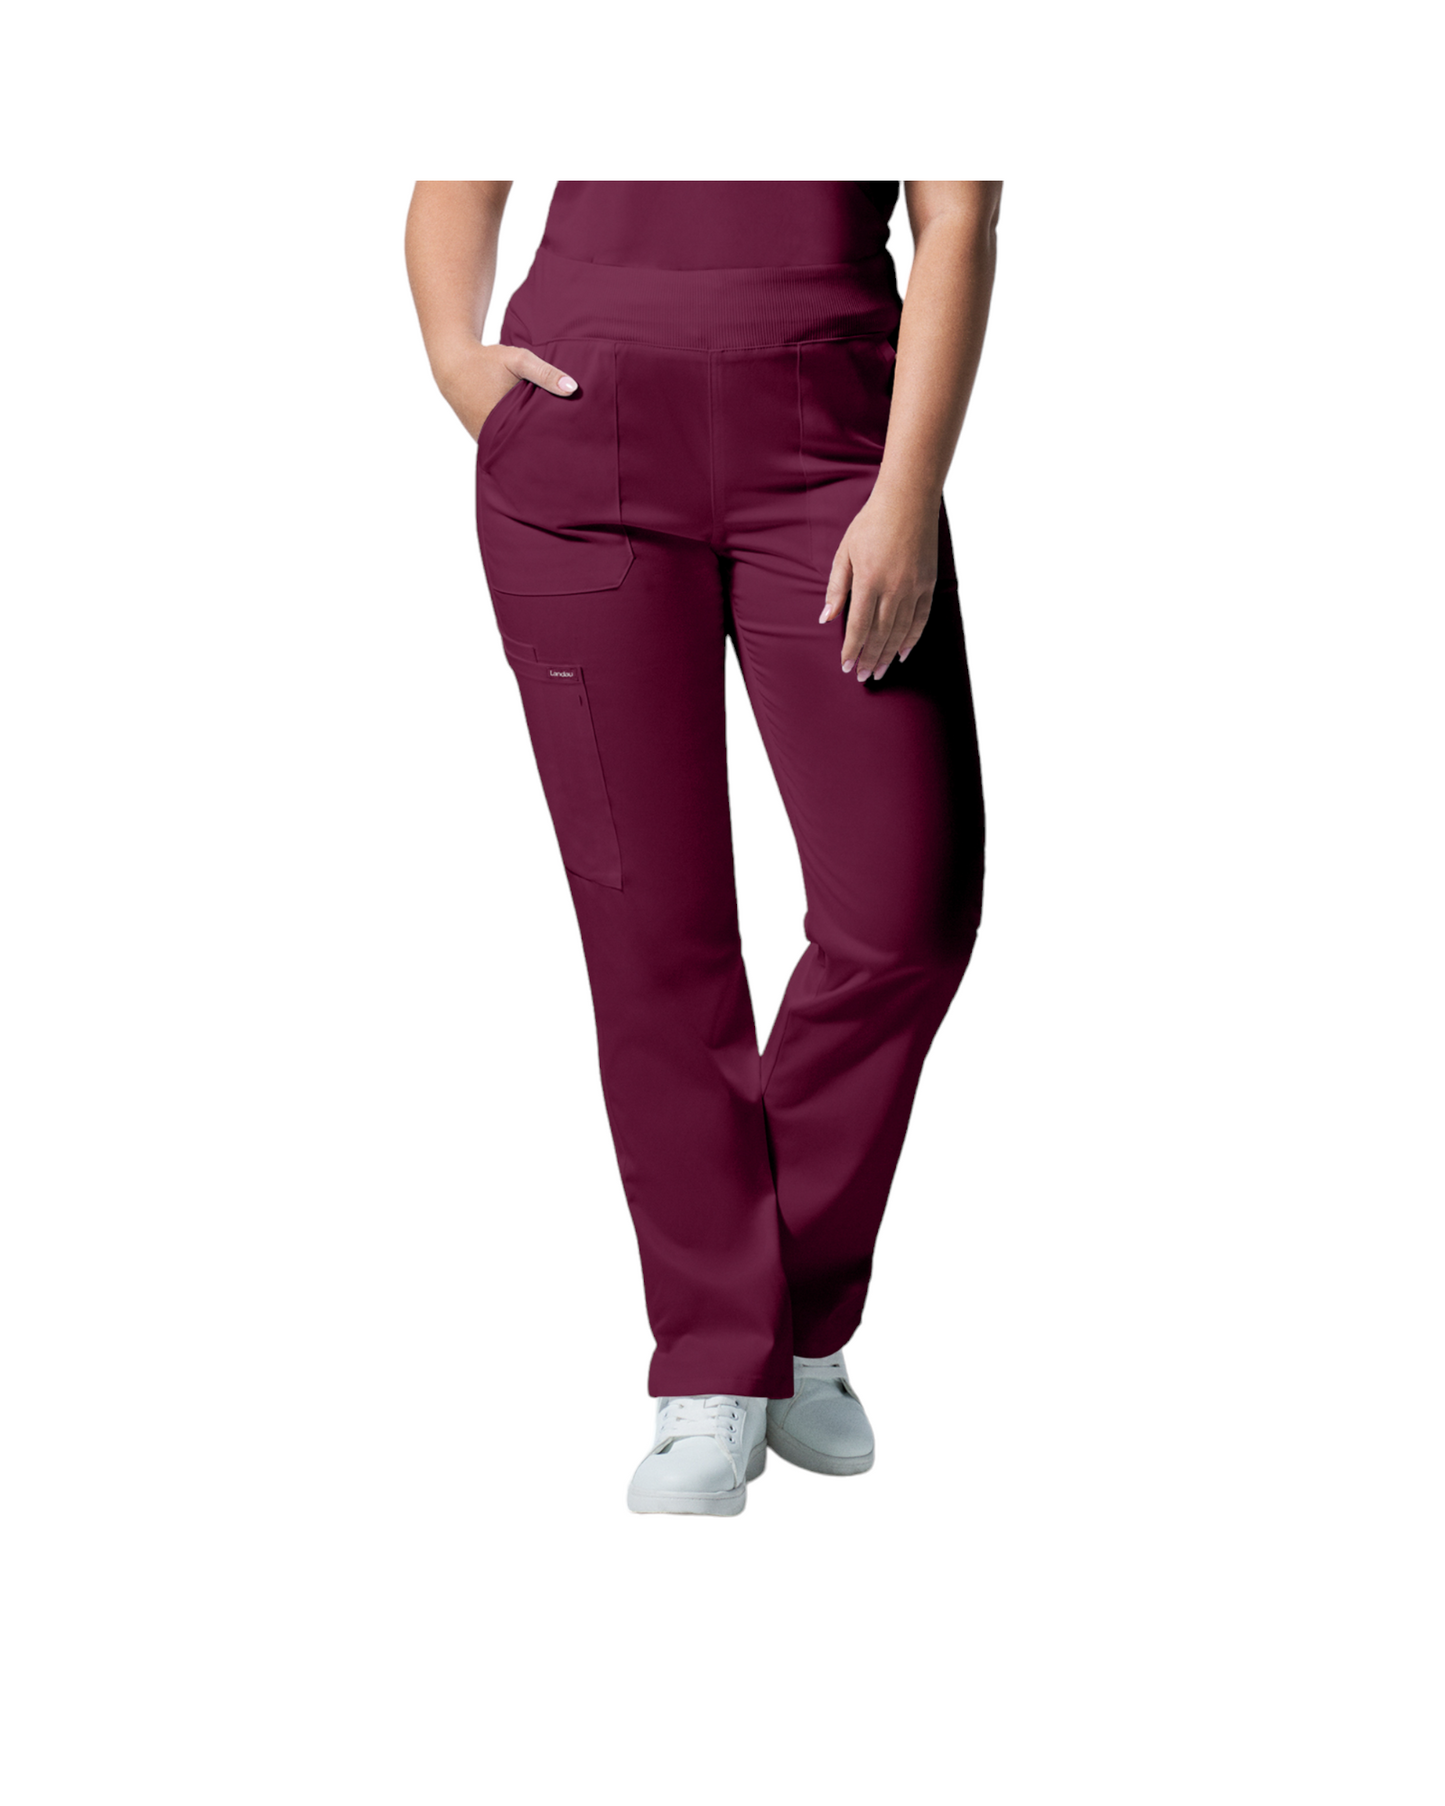 Pantalons 6 poches pour femmes Landau Proflex #LB405 OS couleur Bourgogne